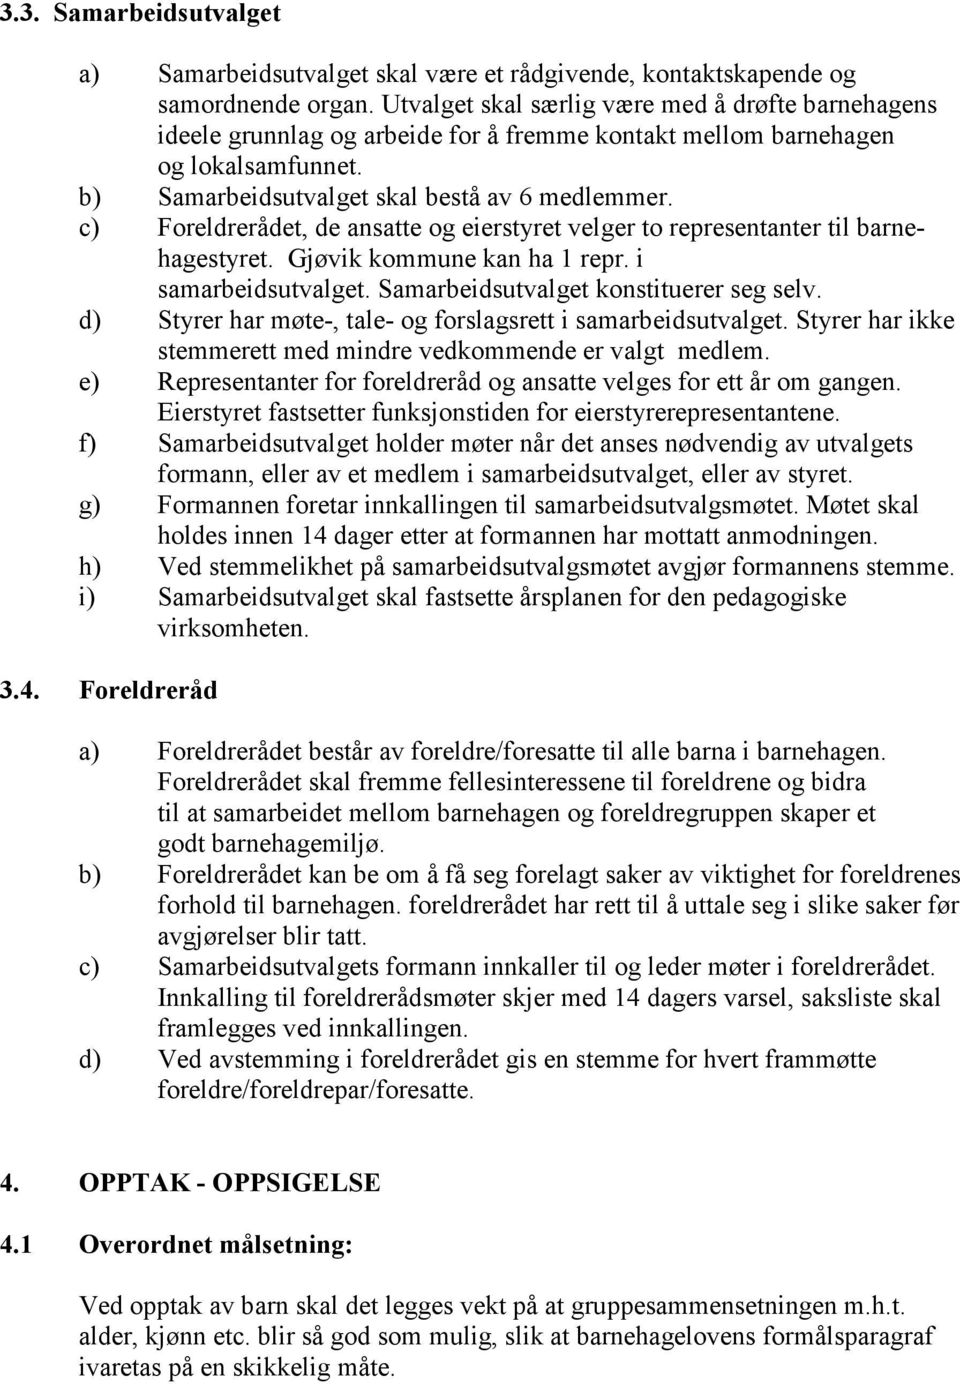 c) Foreldrerådet, de ansatte og eierstyret velger to representanter til barnehagestyret. Gjøvik kommune kan ha 1 repr. i samarbeidsutvalget. Samarbeidsutvalget konstituerer seg selv.